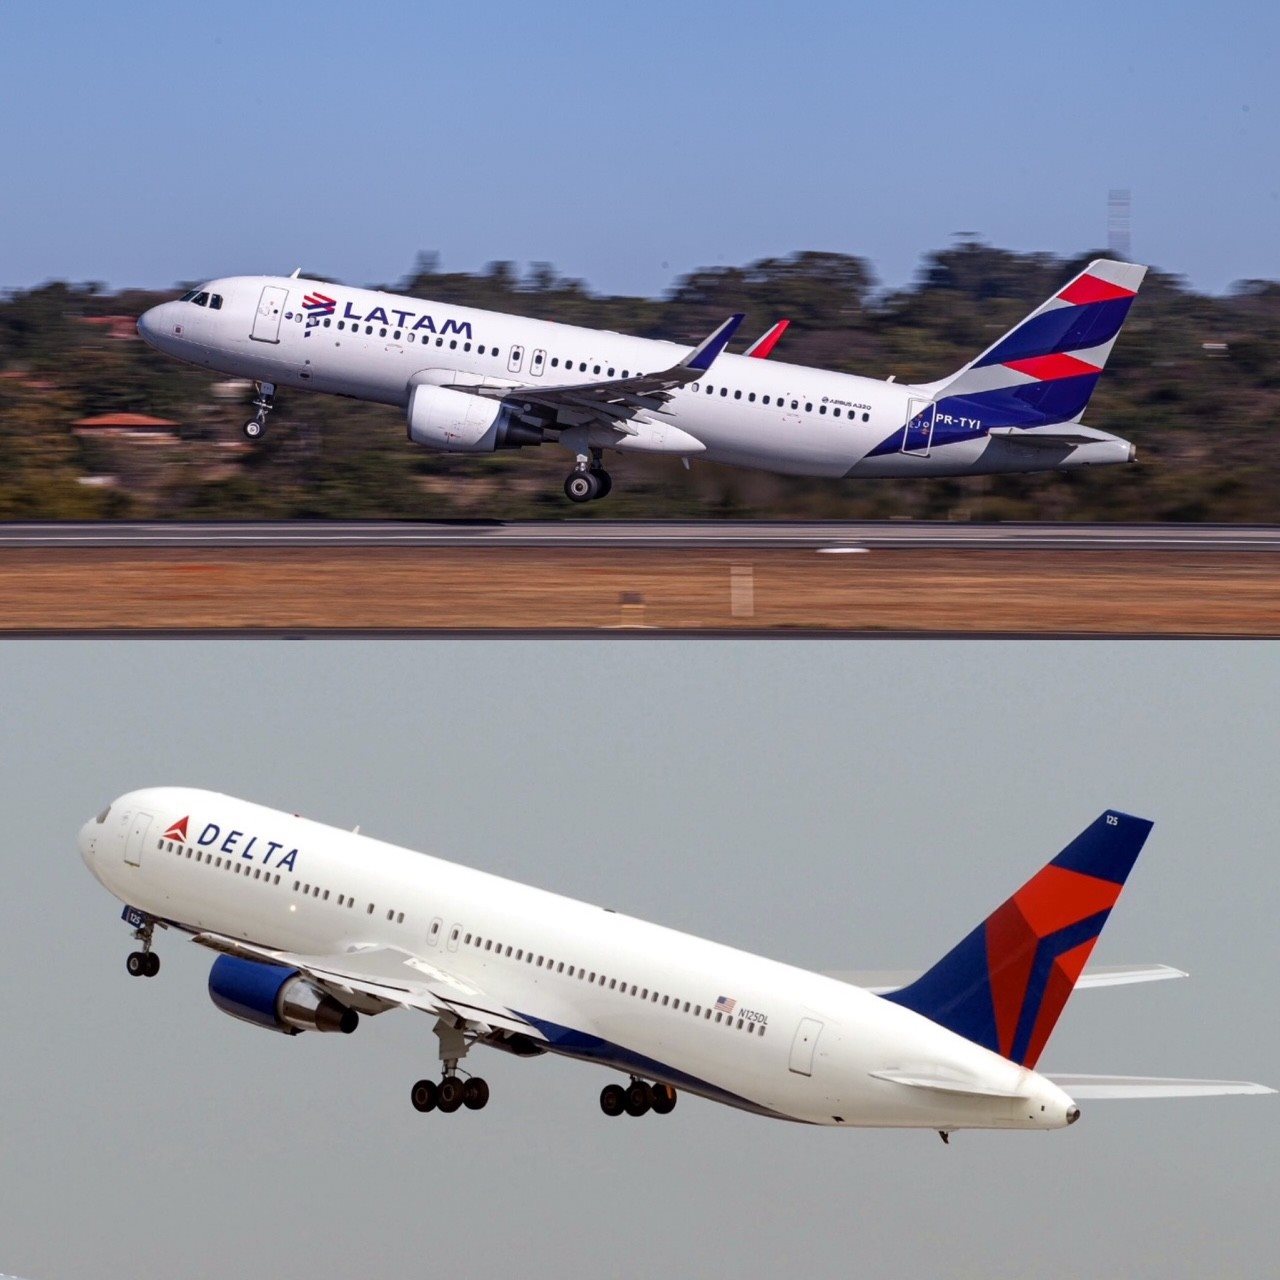 O acordo estratégico entre as companhias aéreas une os mais de 120 destinos sul-americanos atendidos pelo grupo Latam aos mais de 200 destinos norte-americanos atendidos pela Delta